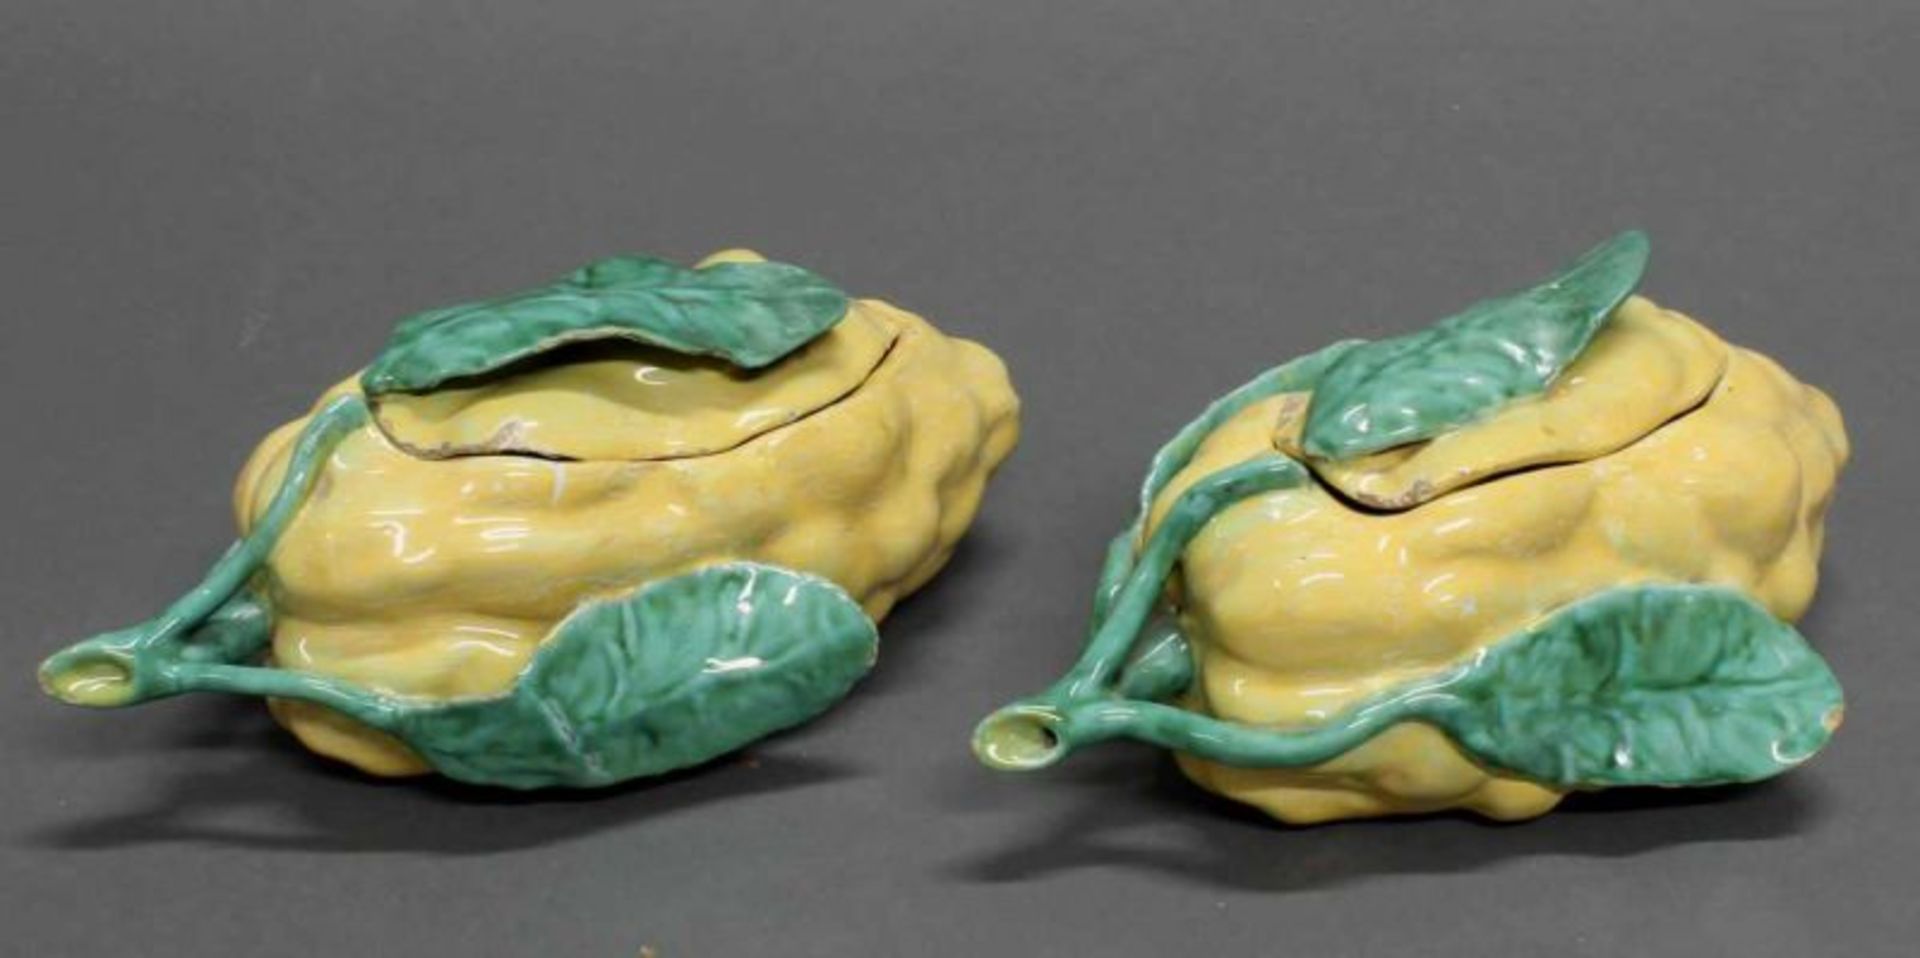 Paar Deckelterrinen, "Zitrusfruchtform", Fayence, Holics, Mitte 18. Jh., ungemarkt, gelb und grün